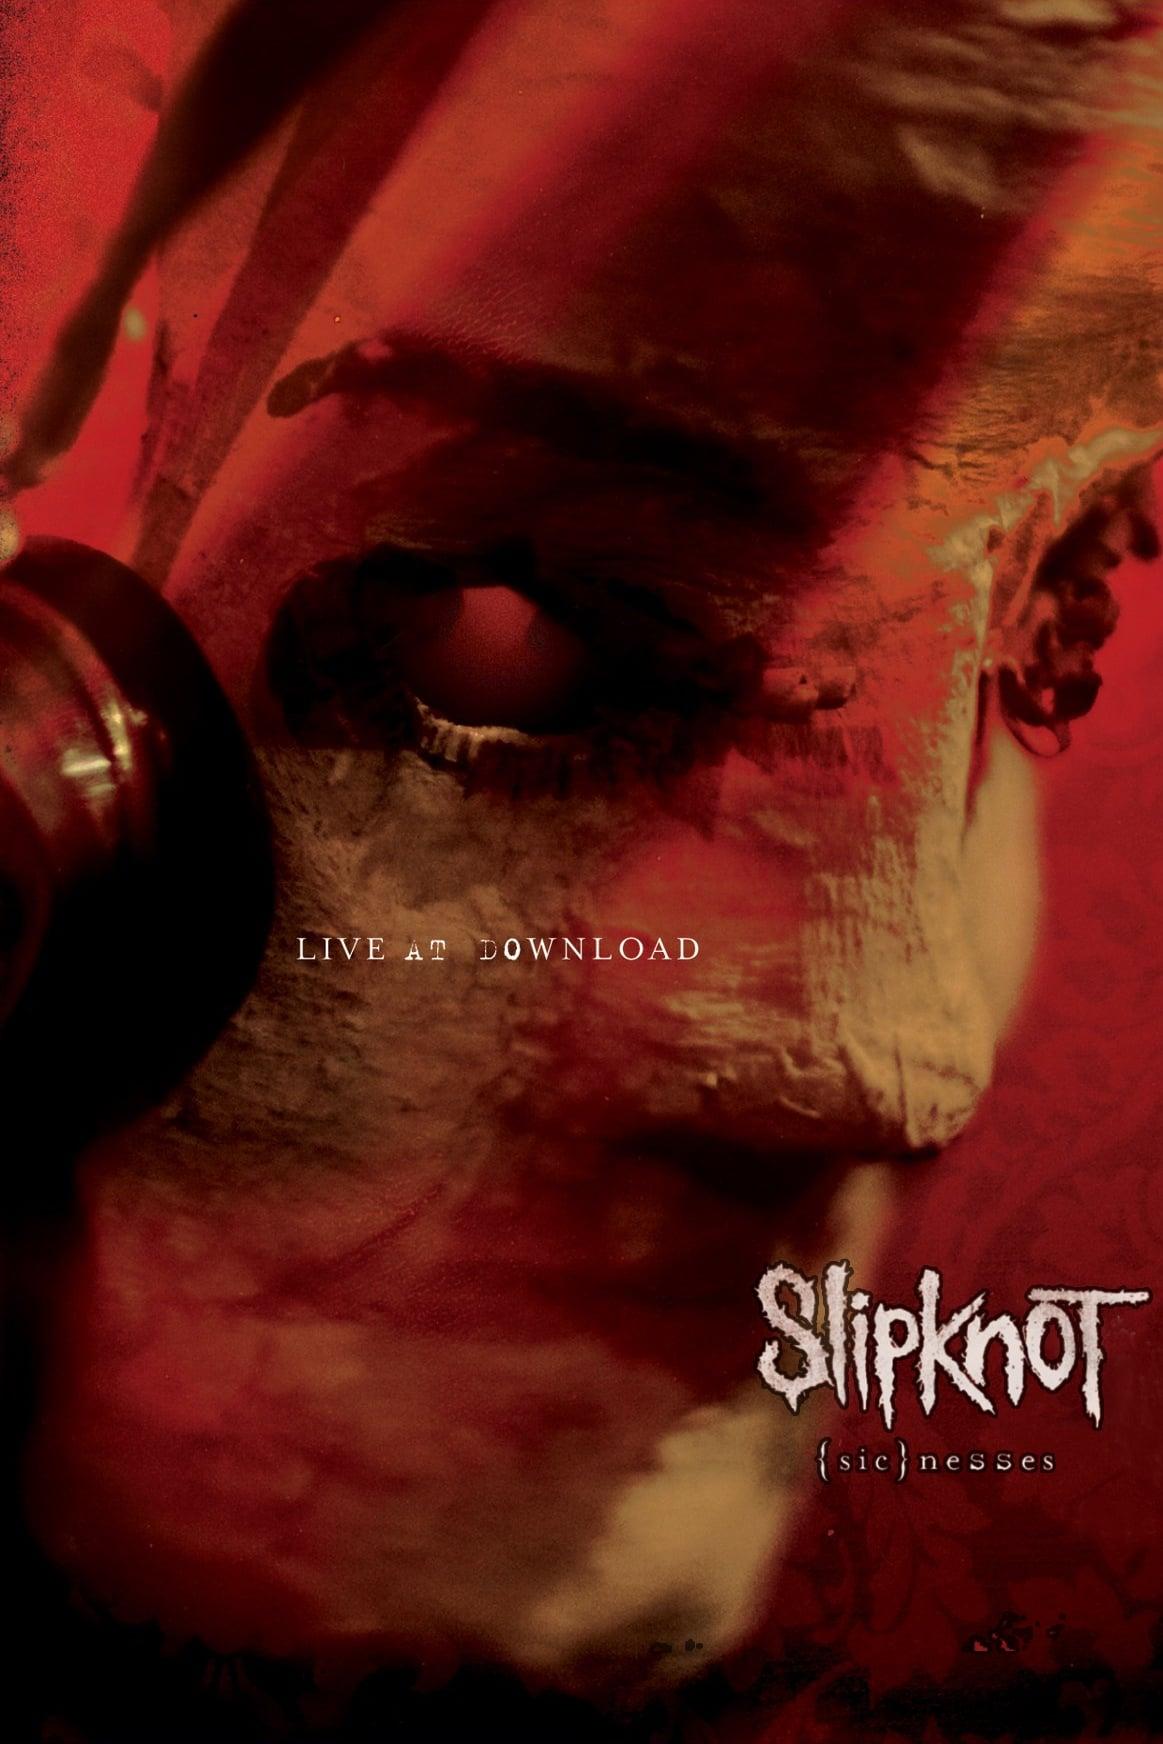 Slipknot: (sic)nesses poster